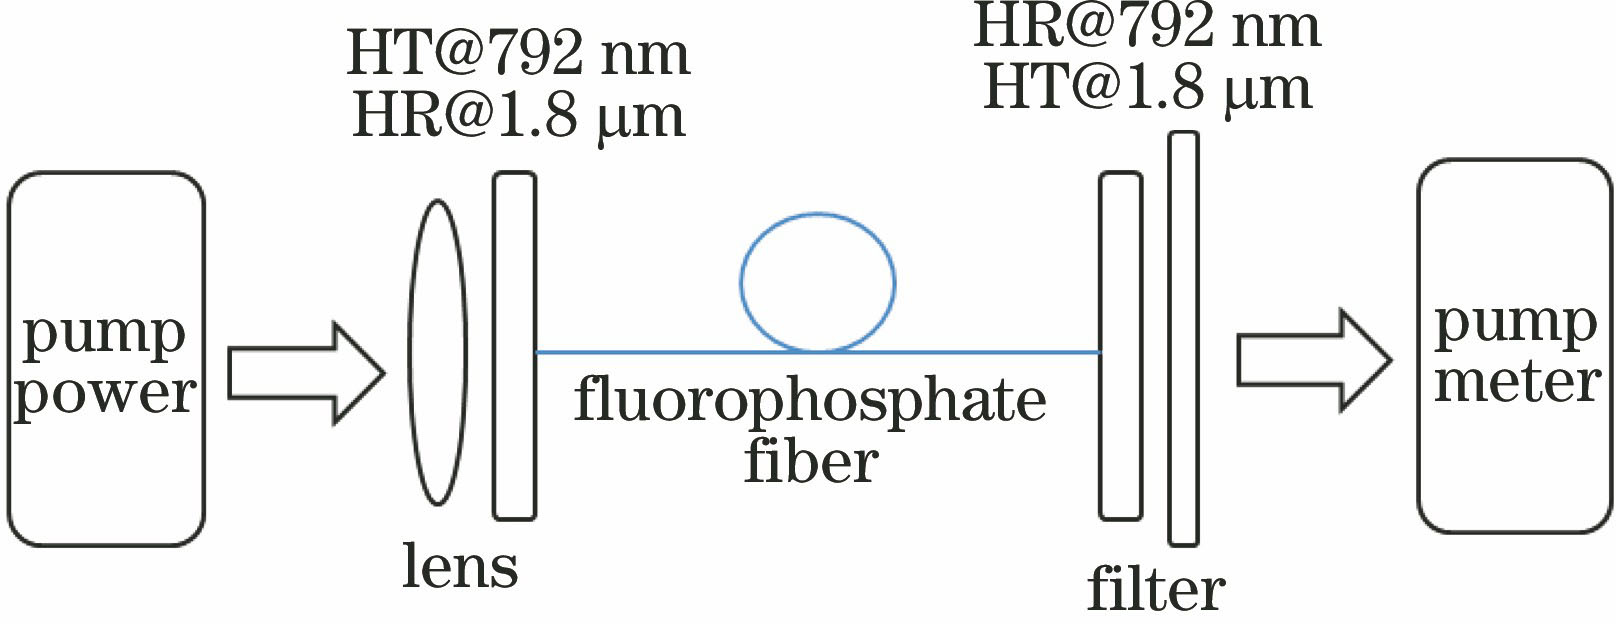 Laser test diagram of fluorophosphate glass fiber[64]